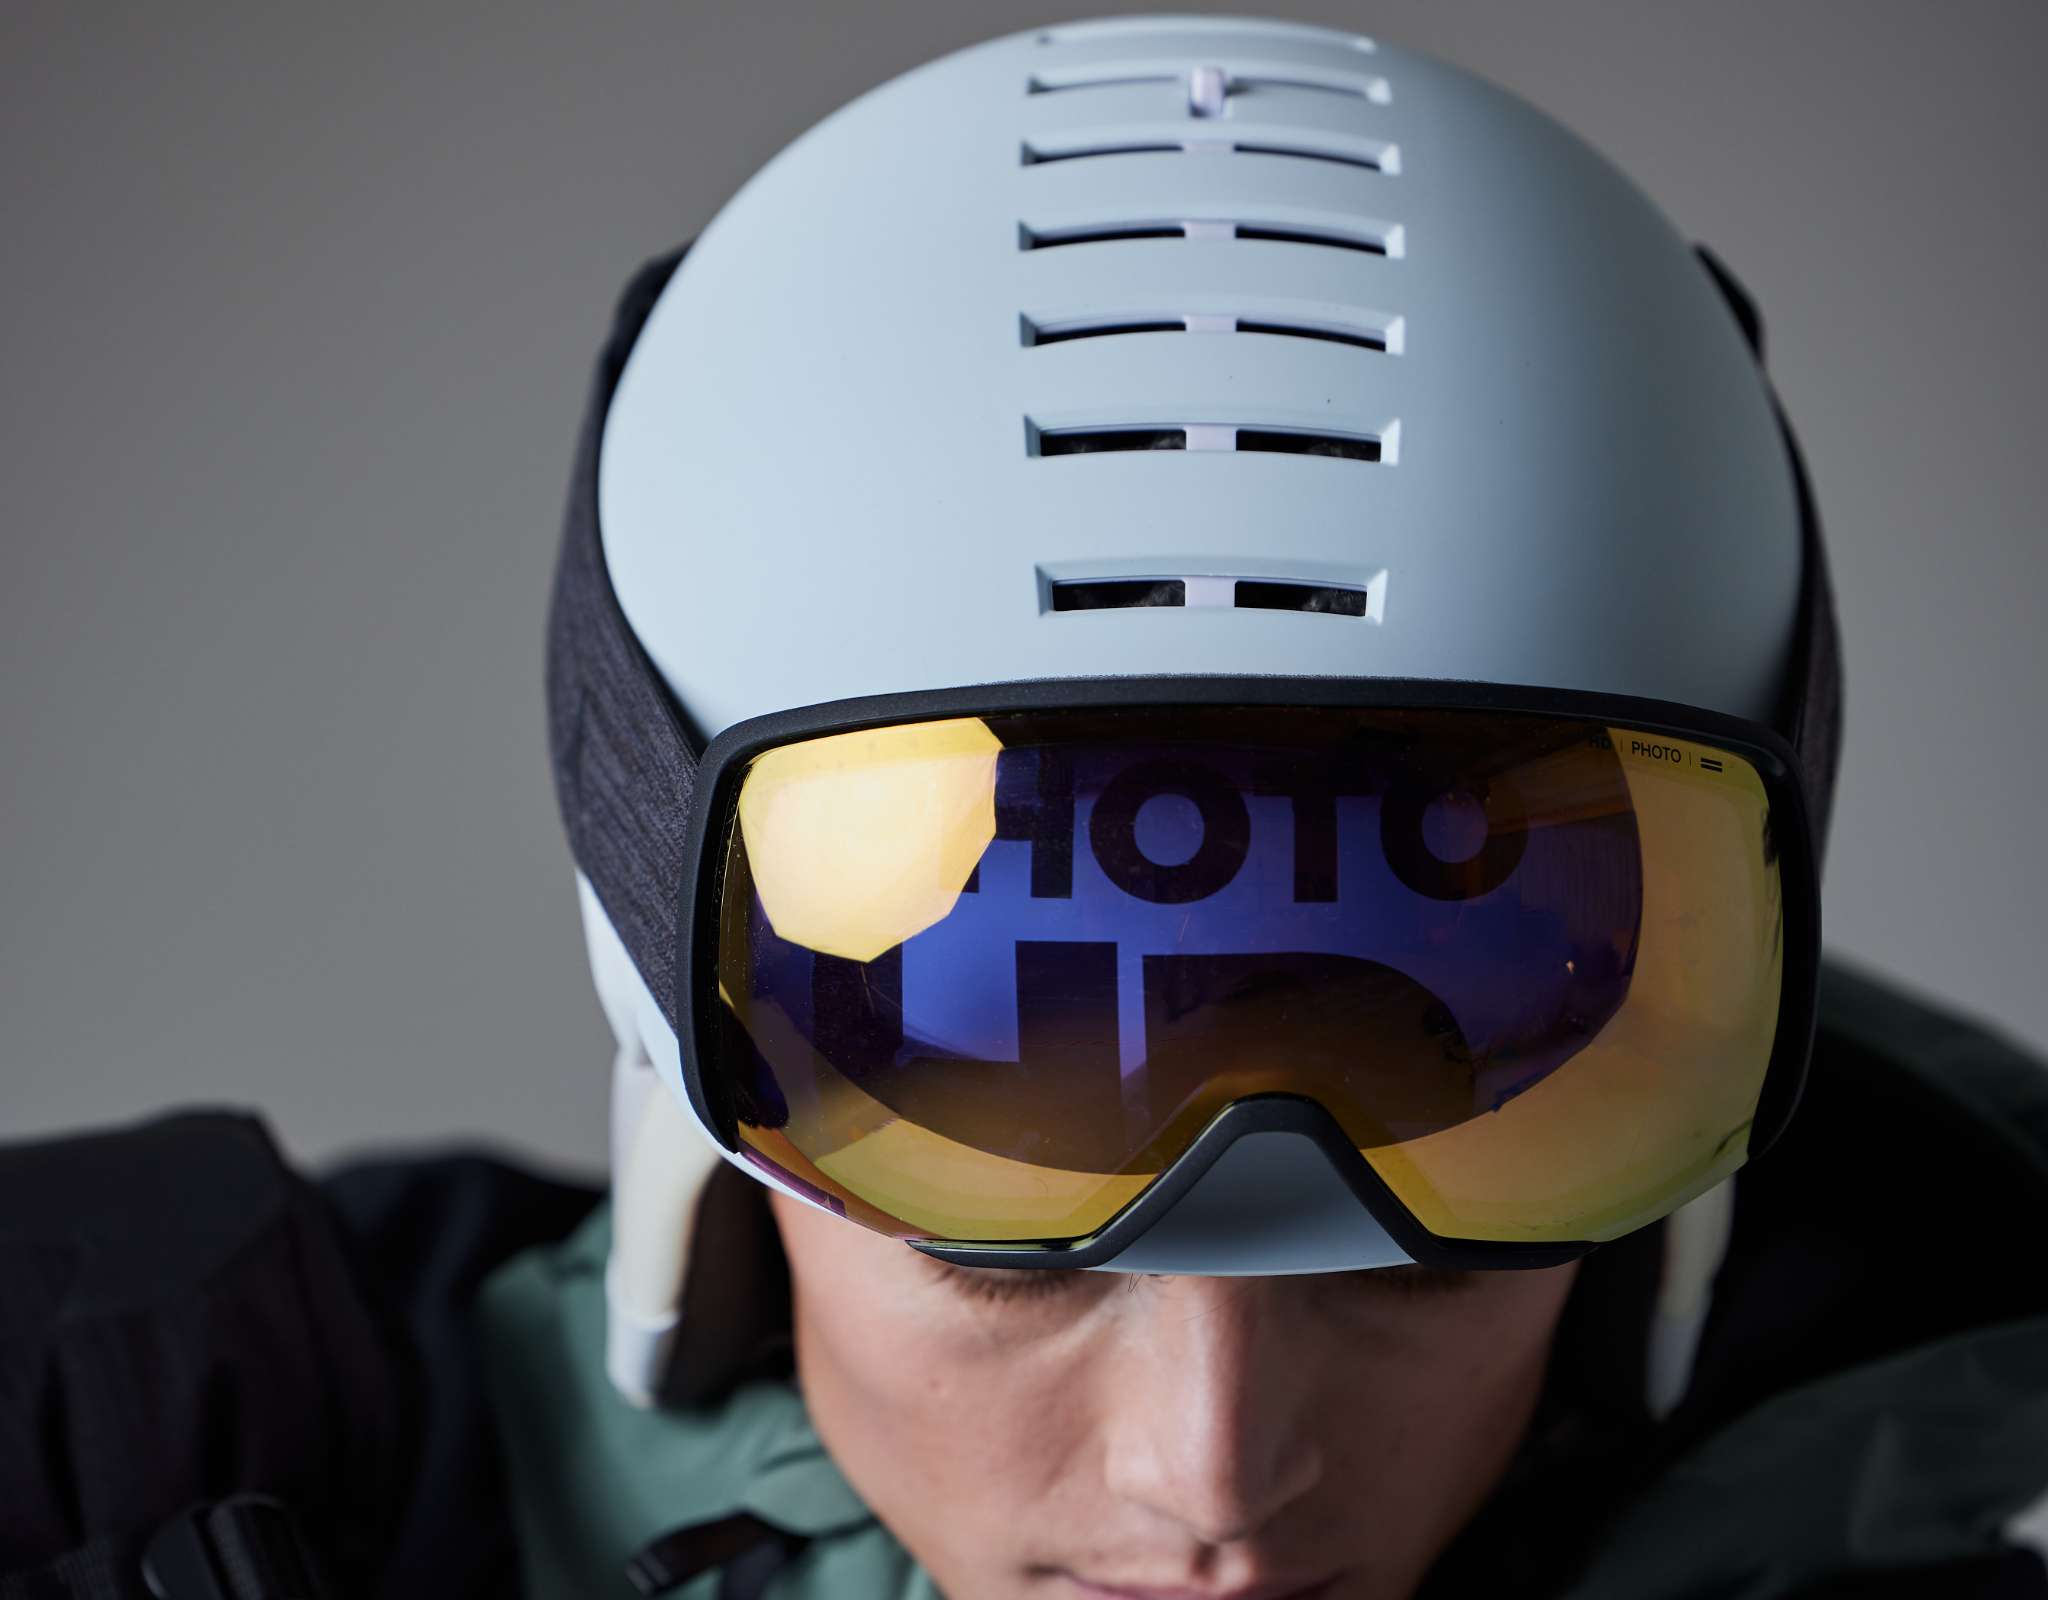 Salomon présente les casques de ski à visière Salomon Driver